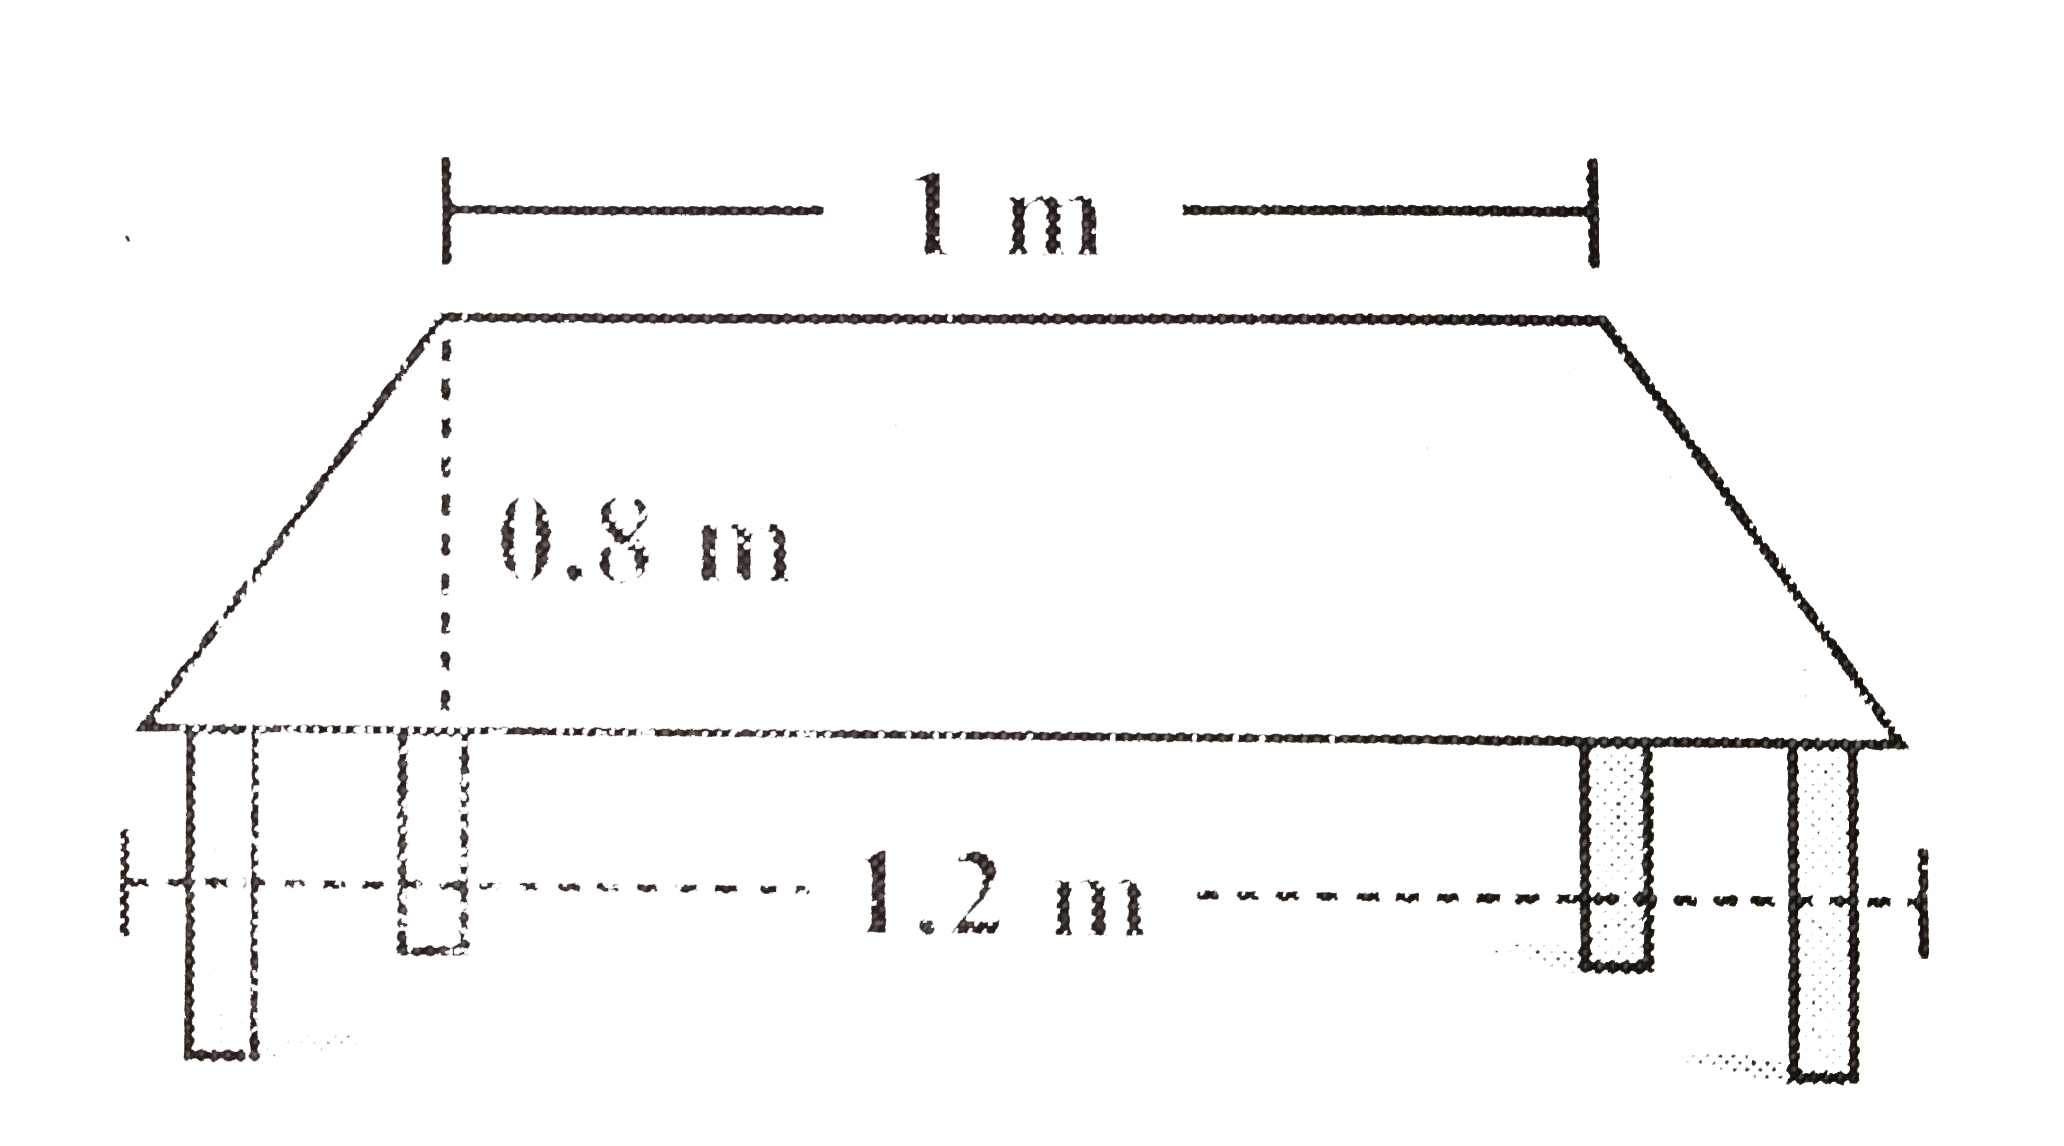 एक मेज के ऊपरी  पृष्ठ ( सतह ) का आकार समलंब  जैसा है | यदि इसकी  समांतर  भुजाएँ 1 m और 1.2 m है तथा इन समांतर भुजाओ के बीच की दुरी 0.8 m है, तो इसका क्षेत्रफल ज्ञात कीजिए |